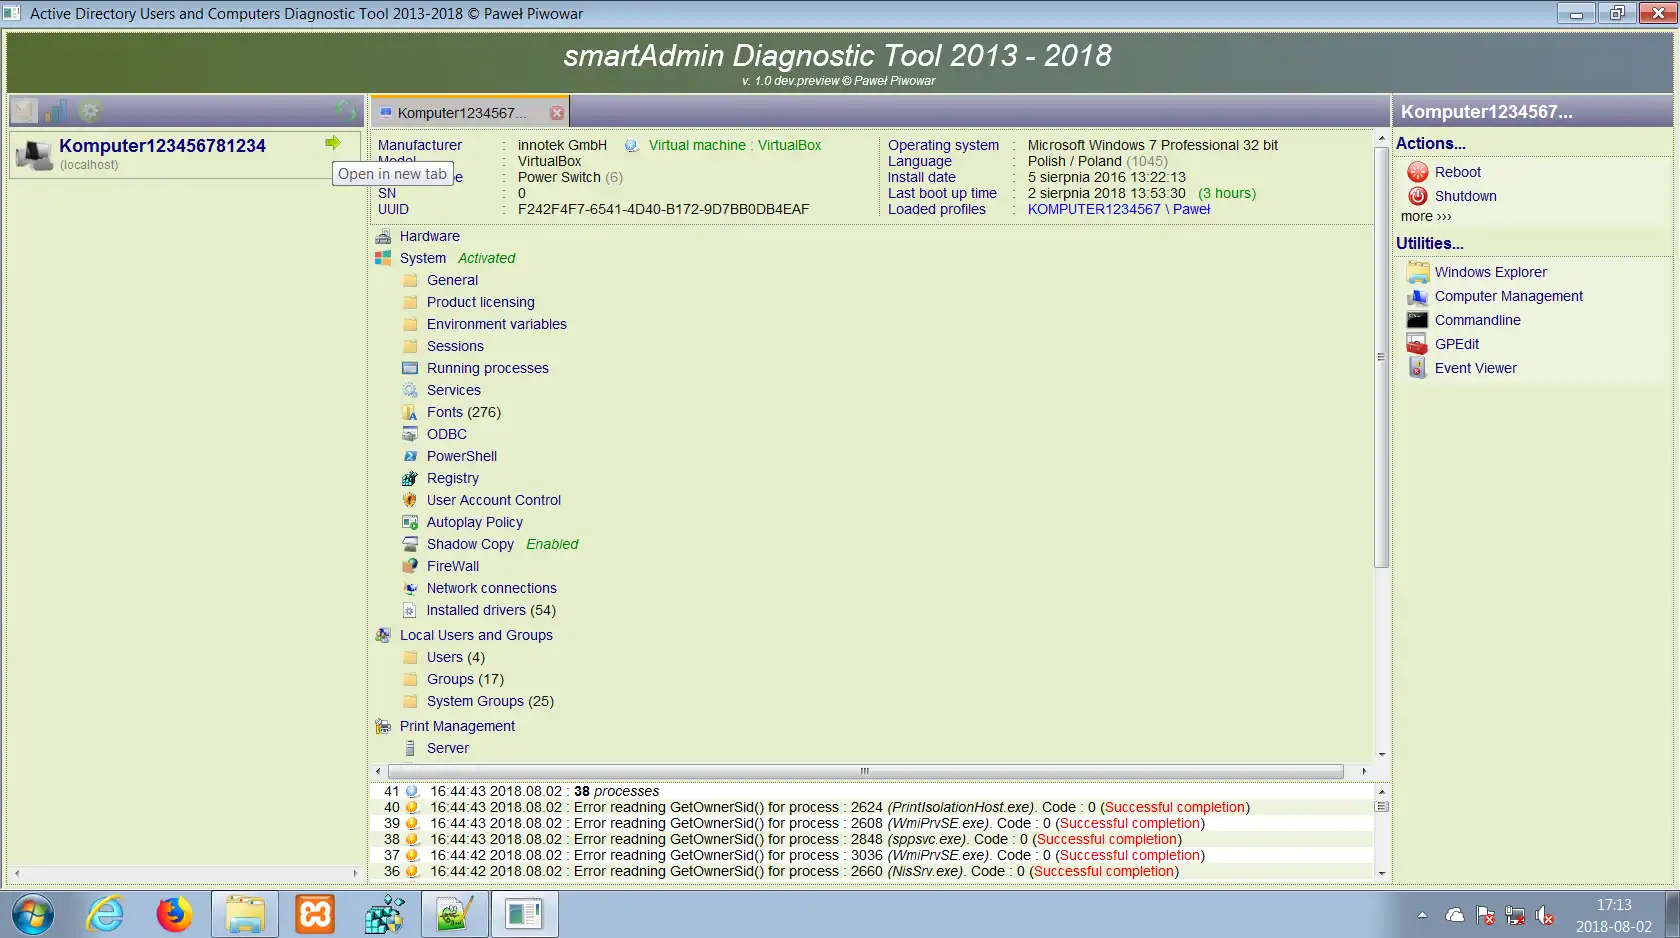 قم بتنزيل أداة الويب أو تطبيق الويب أداة تشخيص SmartADmin